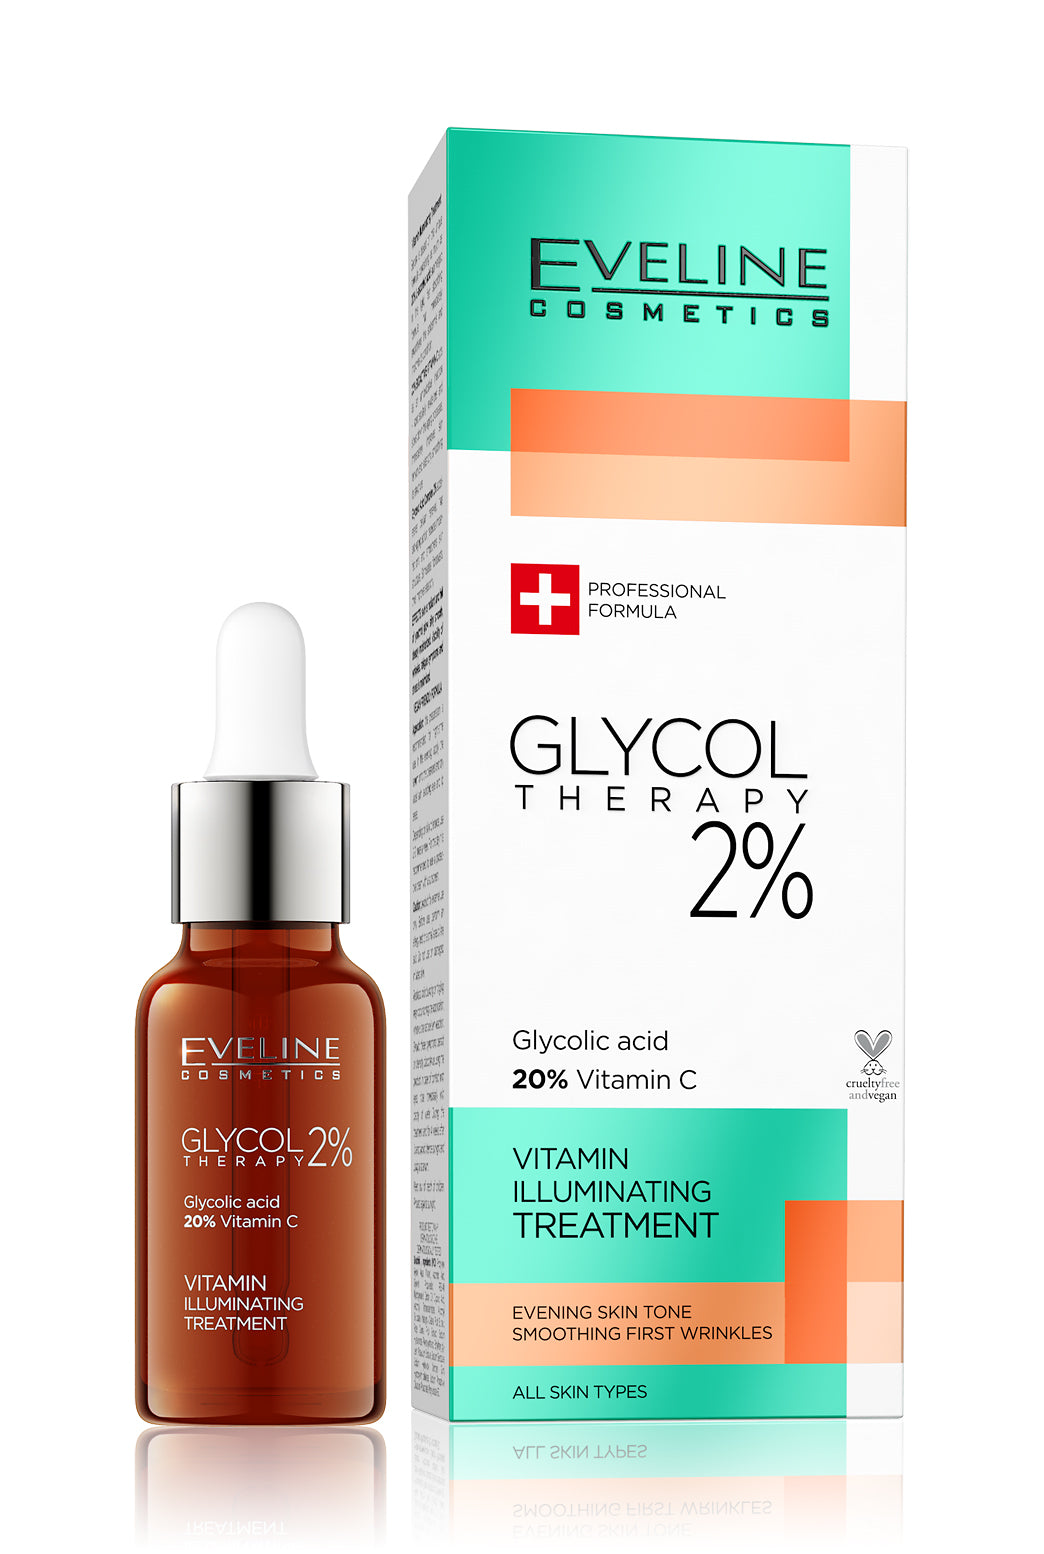 Eveline Glycol therapy 2% vitamin illumin.treatment 18ml